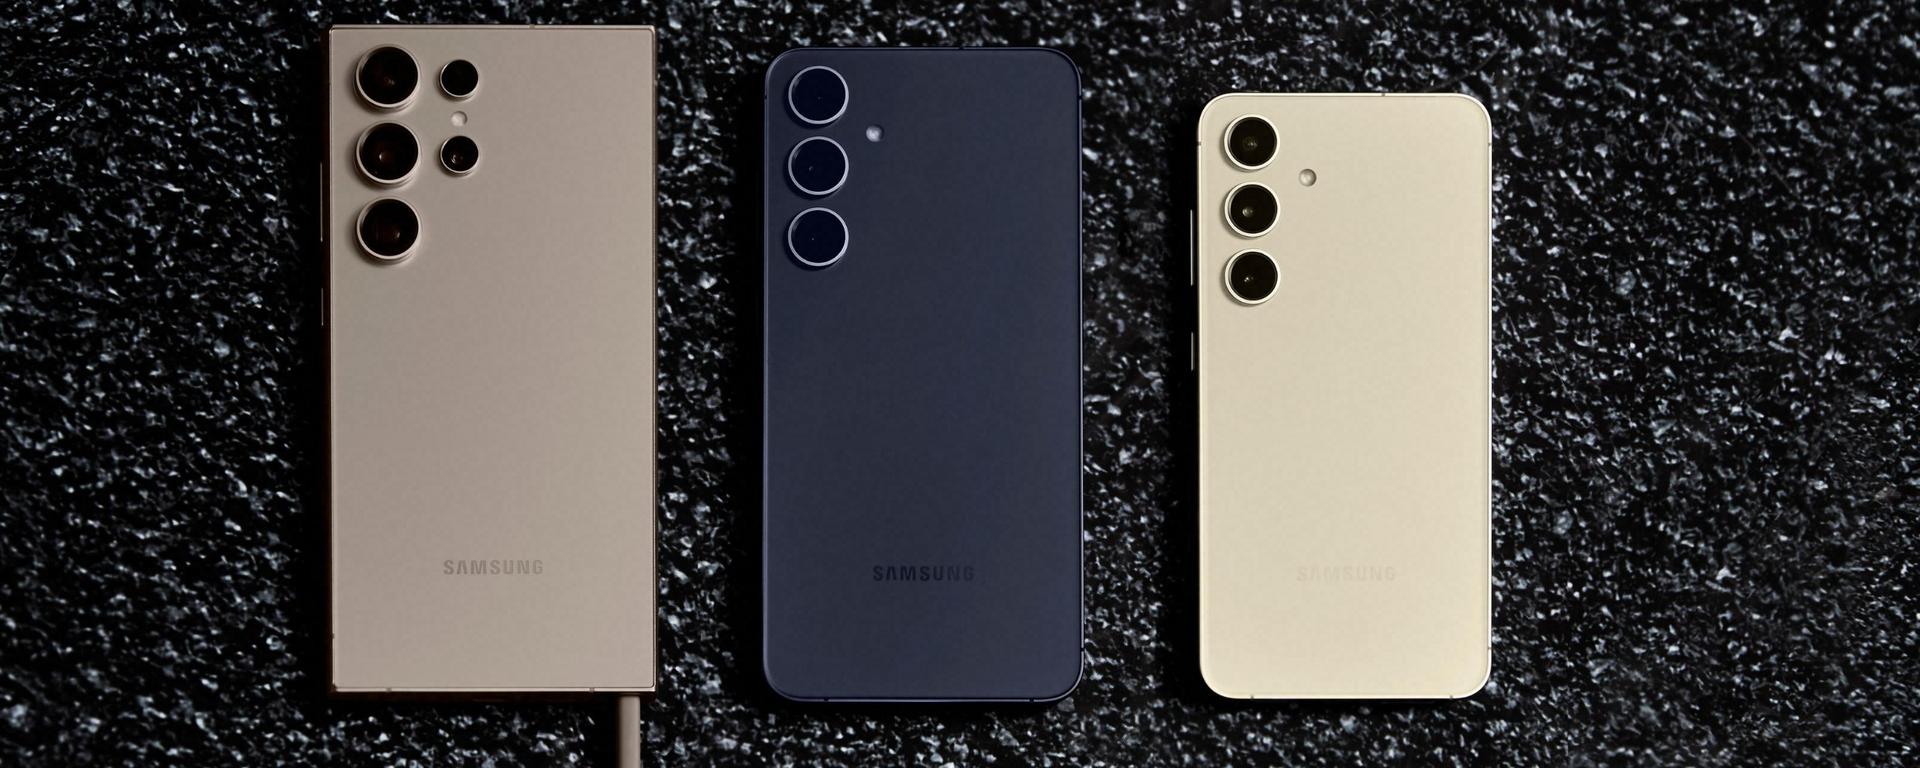 Samsung trabaja en un nuevo móvil ultra resistente y económico